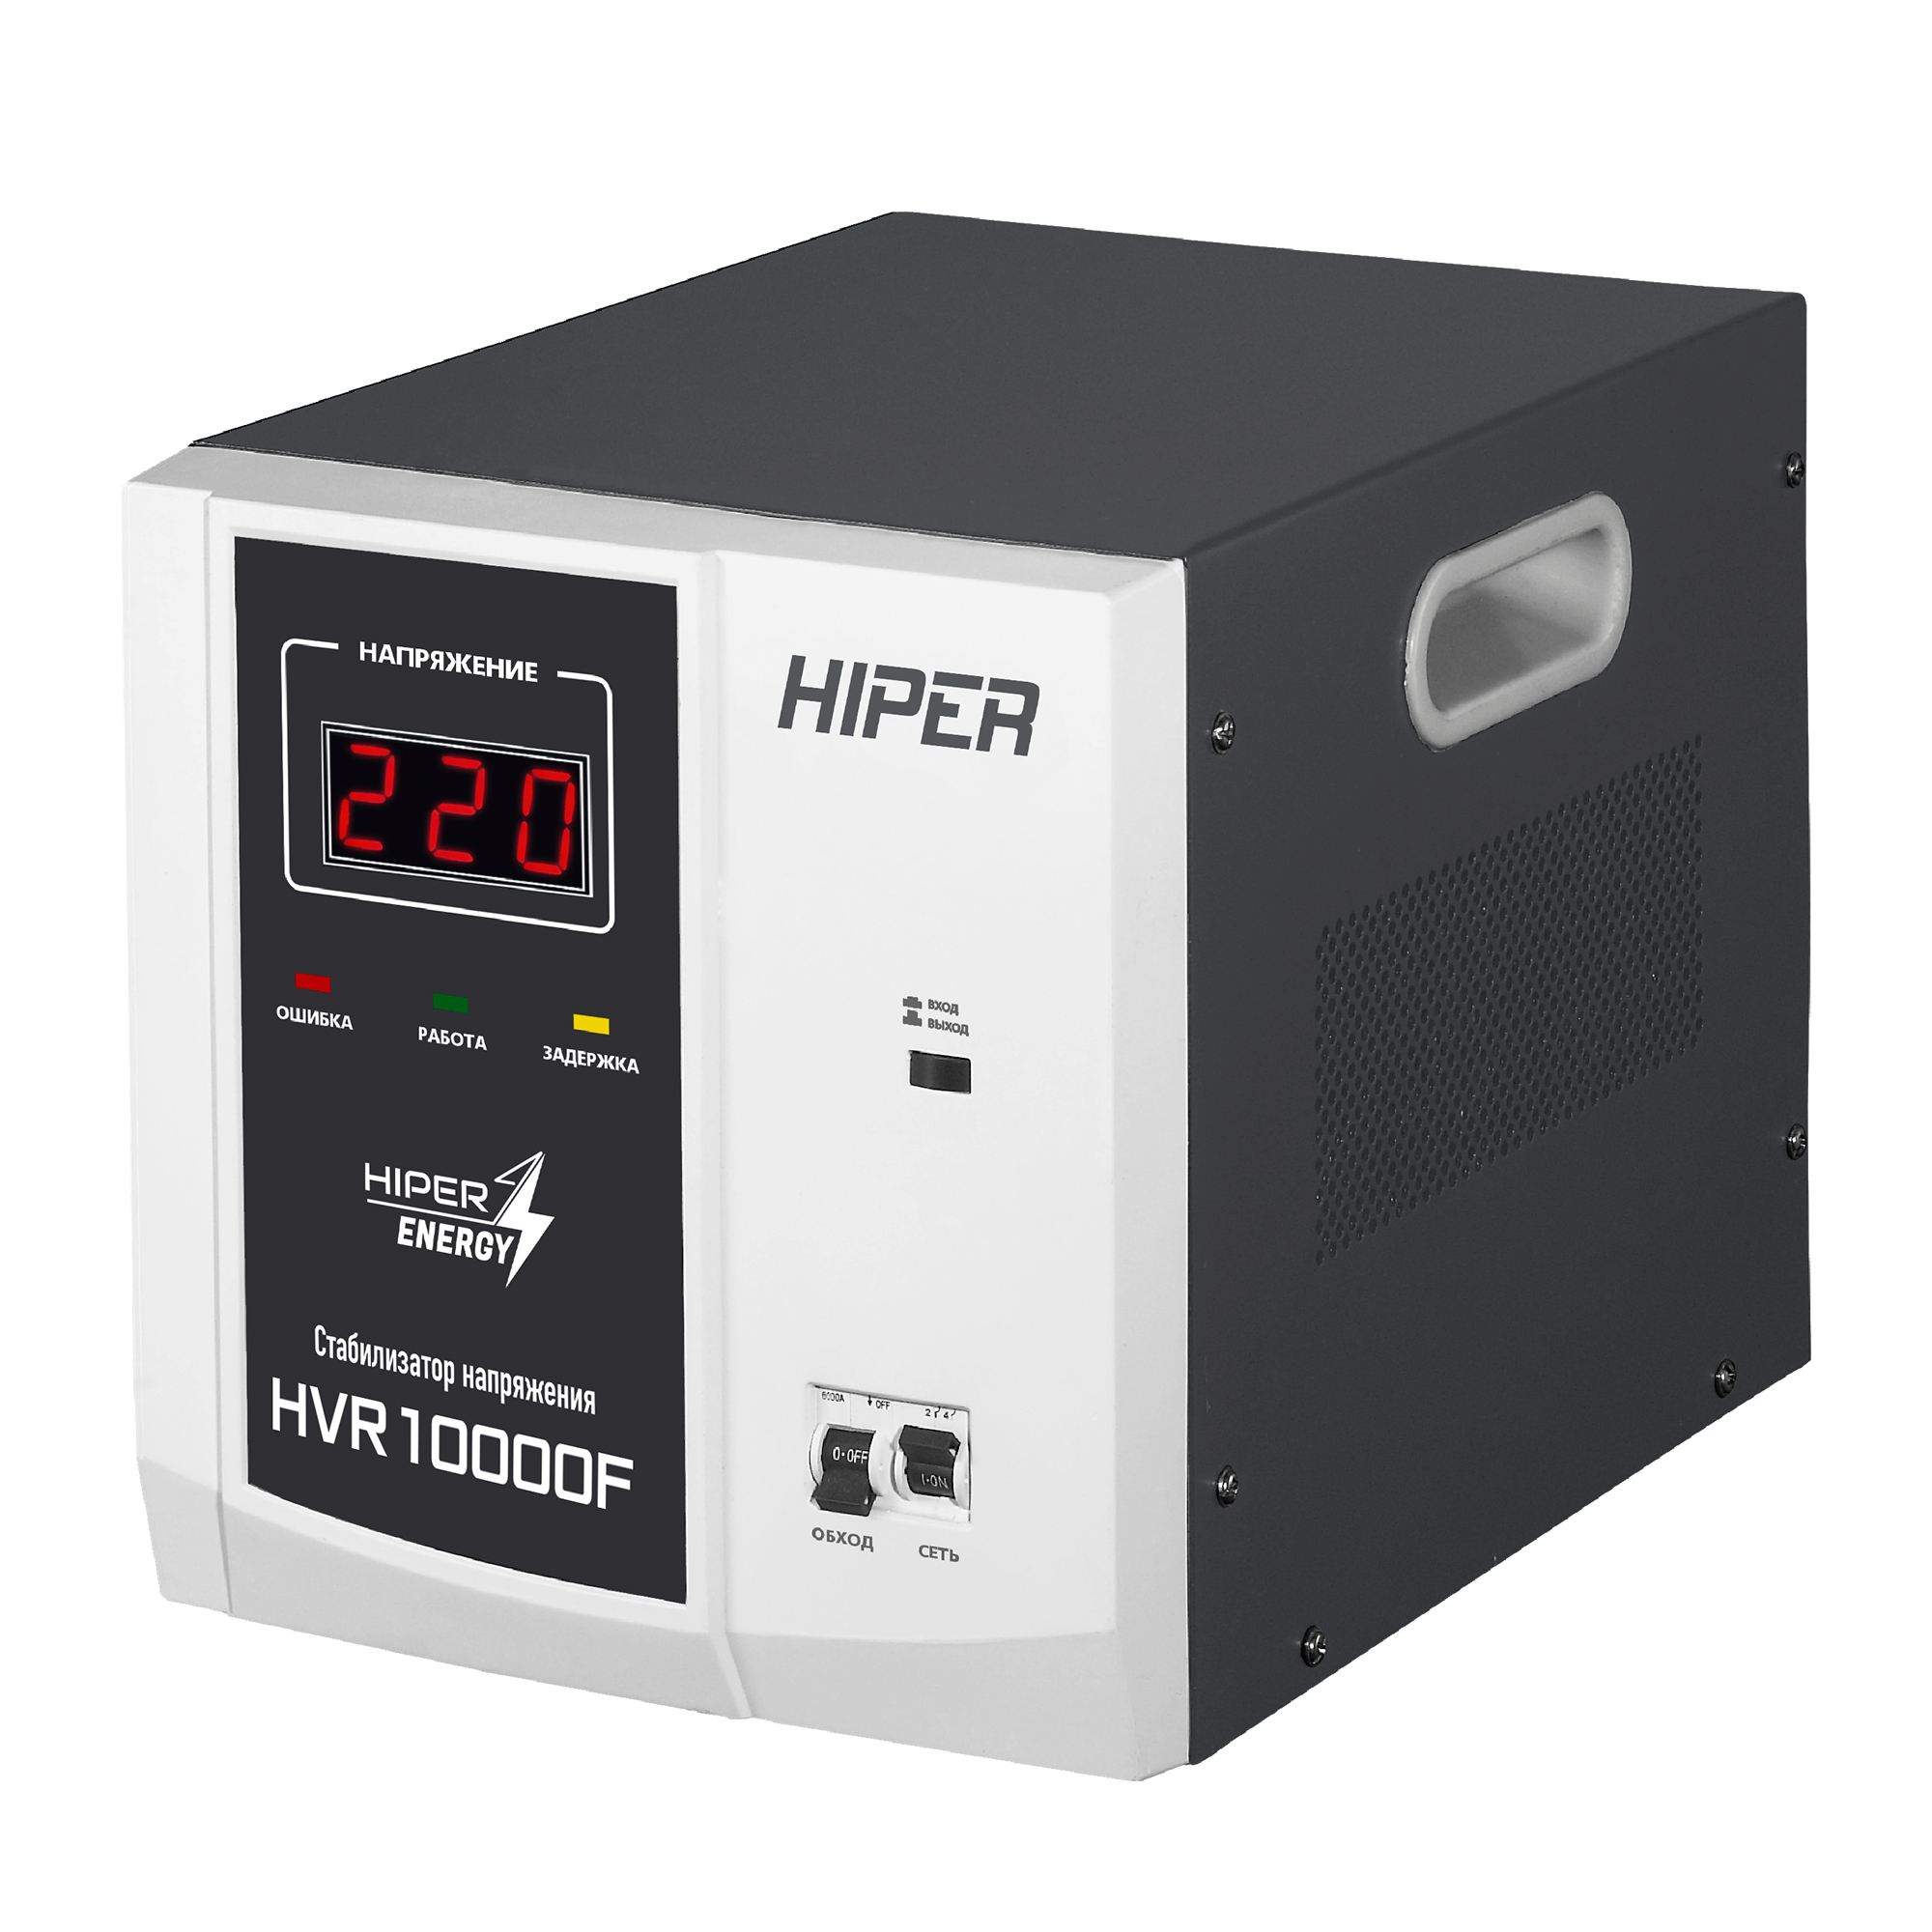 Стабилизатор напряжения Hiper HVR10000F, 10000 VA, 8 кВт, клеммная колодка, черный/белый